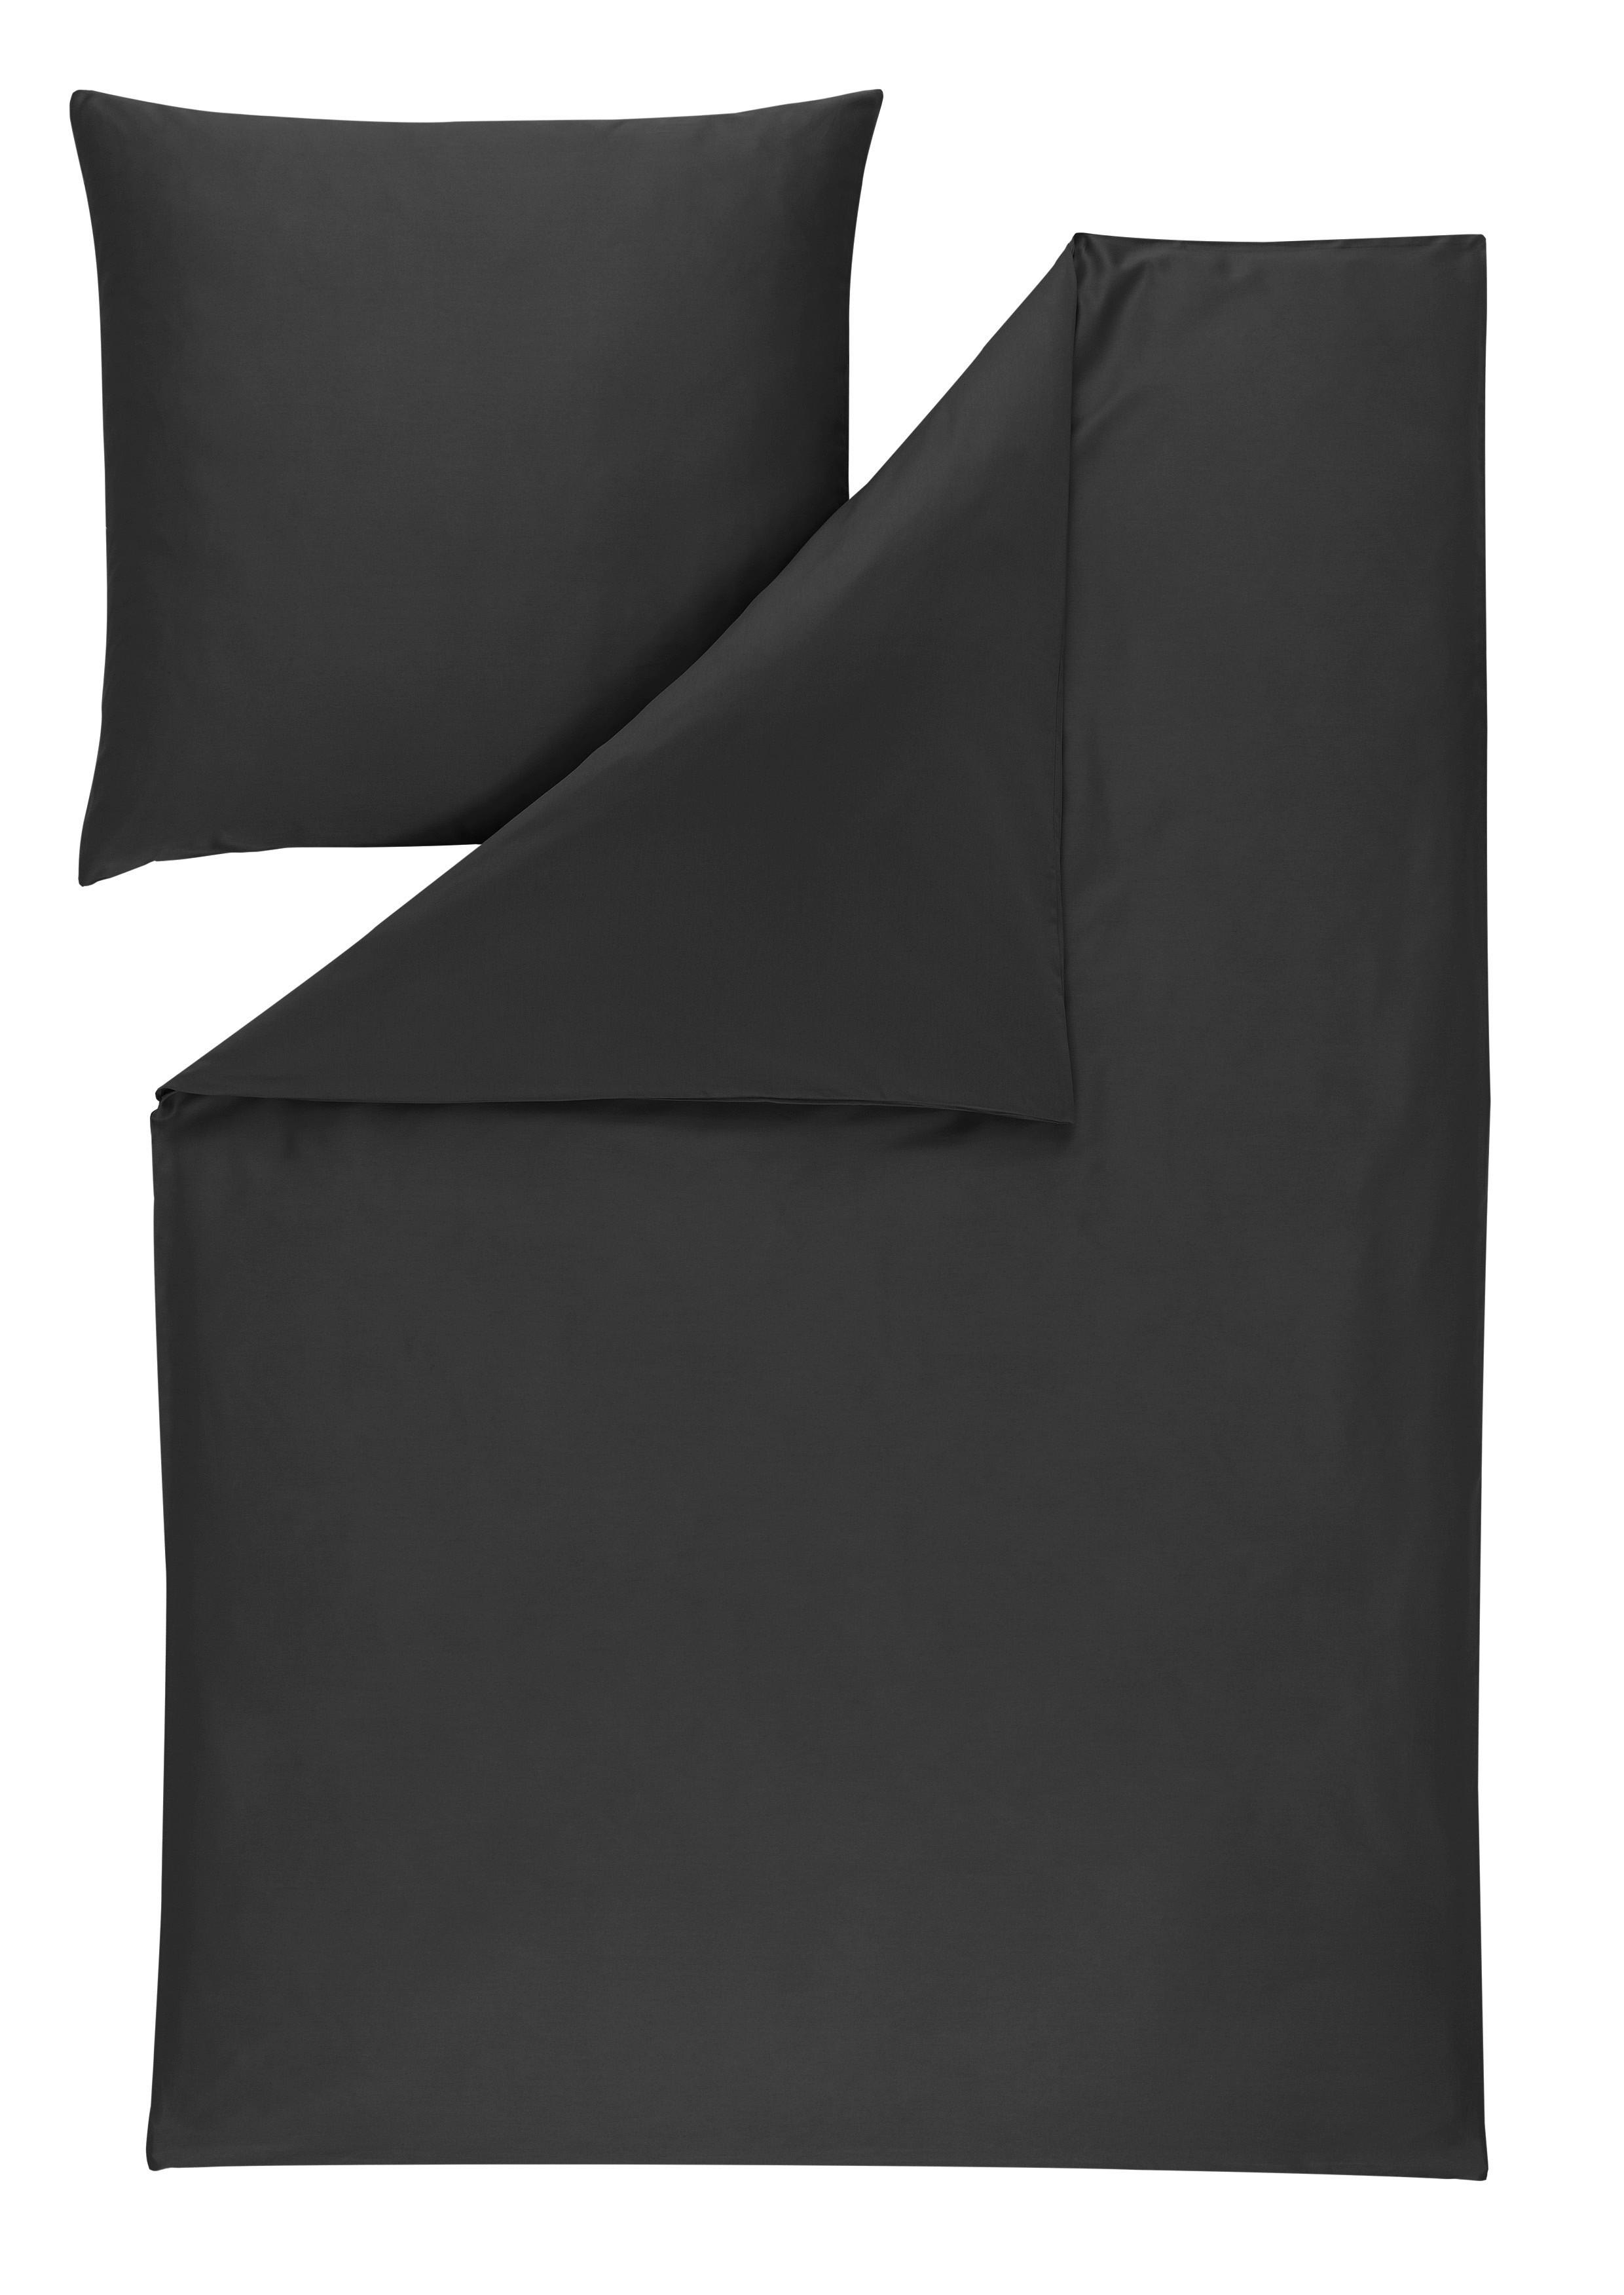 BETTWÄSCHE Levian Makosatin  - Anthrazit, Basics, Textil (135/200cm) - Estella